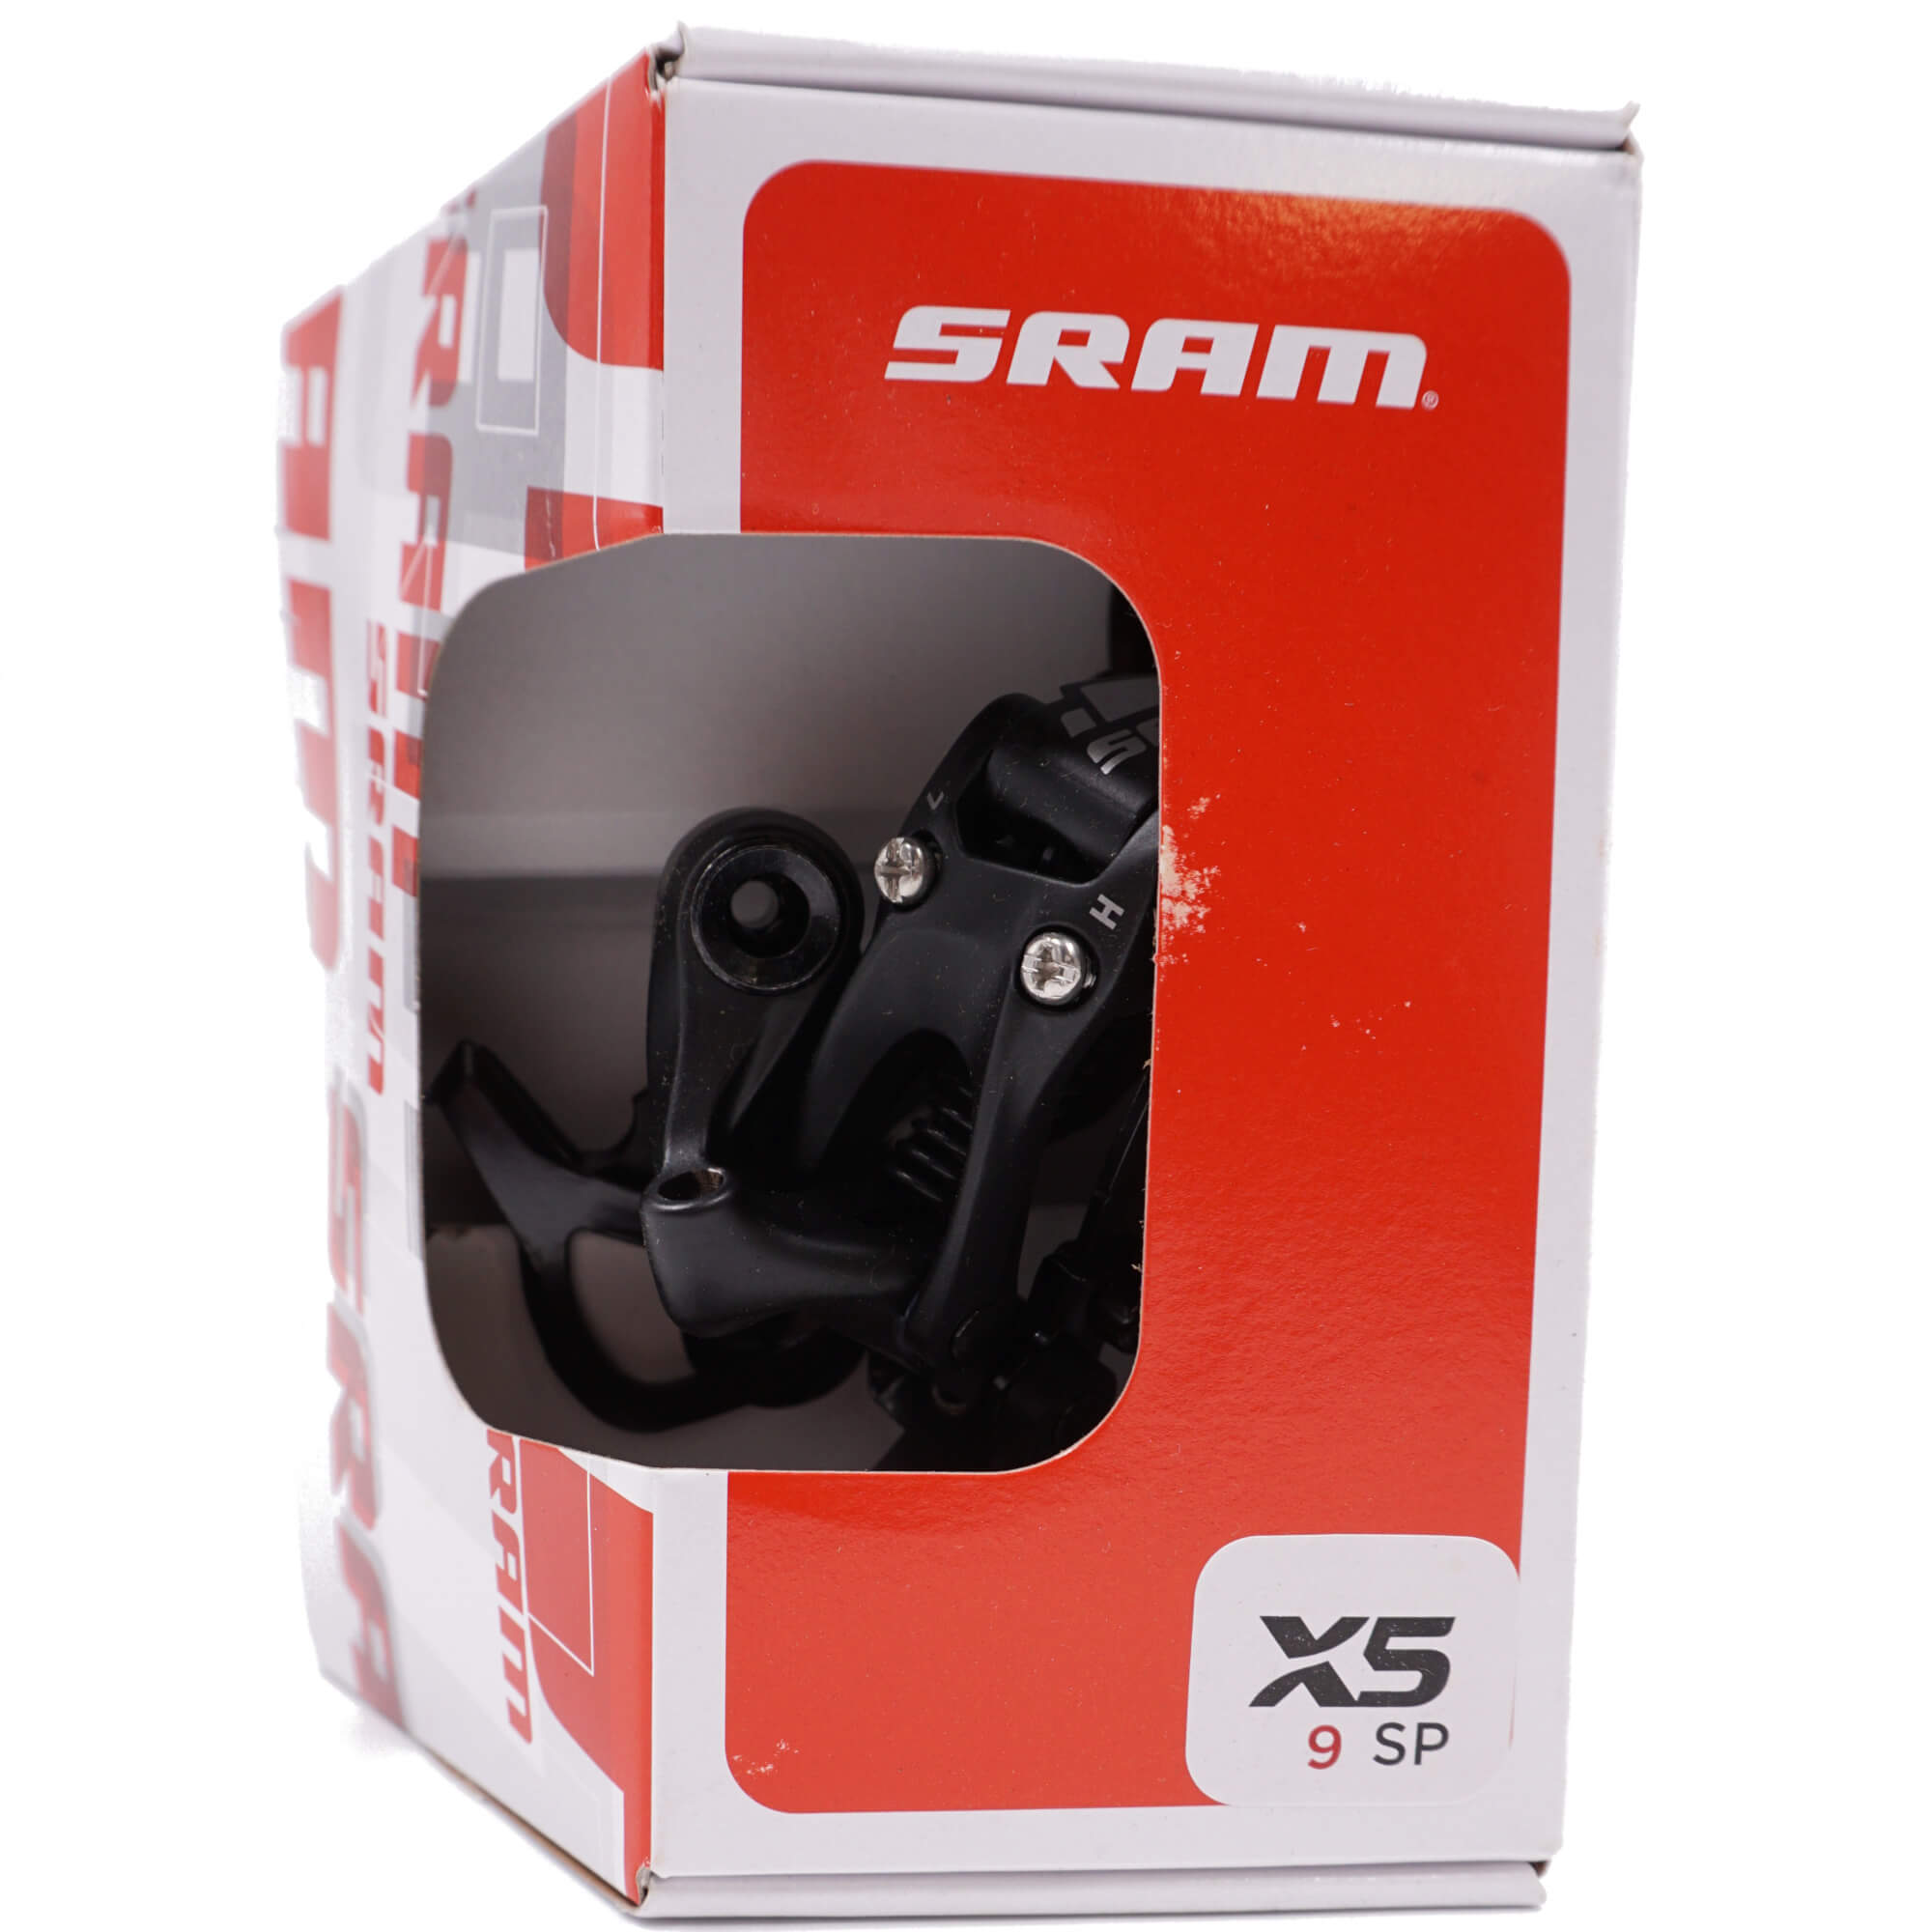 SRAM X5 9 Speed Medium Cage Rear Derailleur - The Bikesmiths